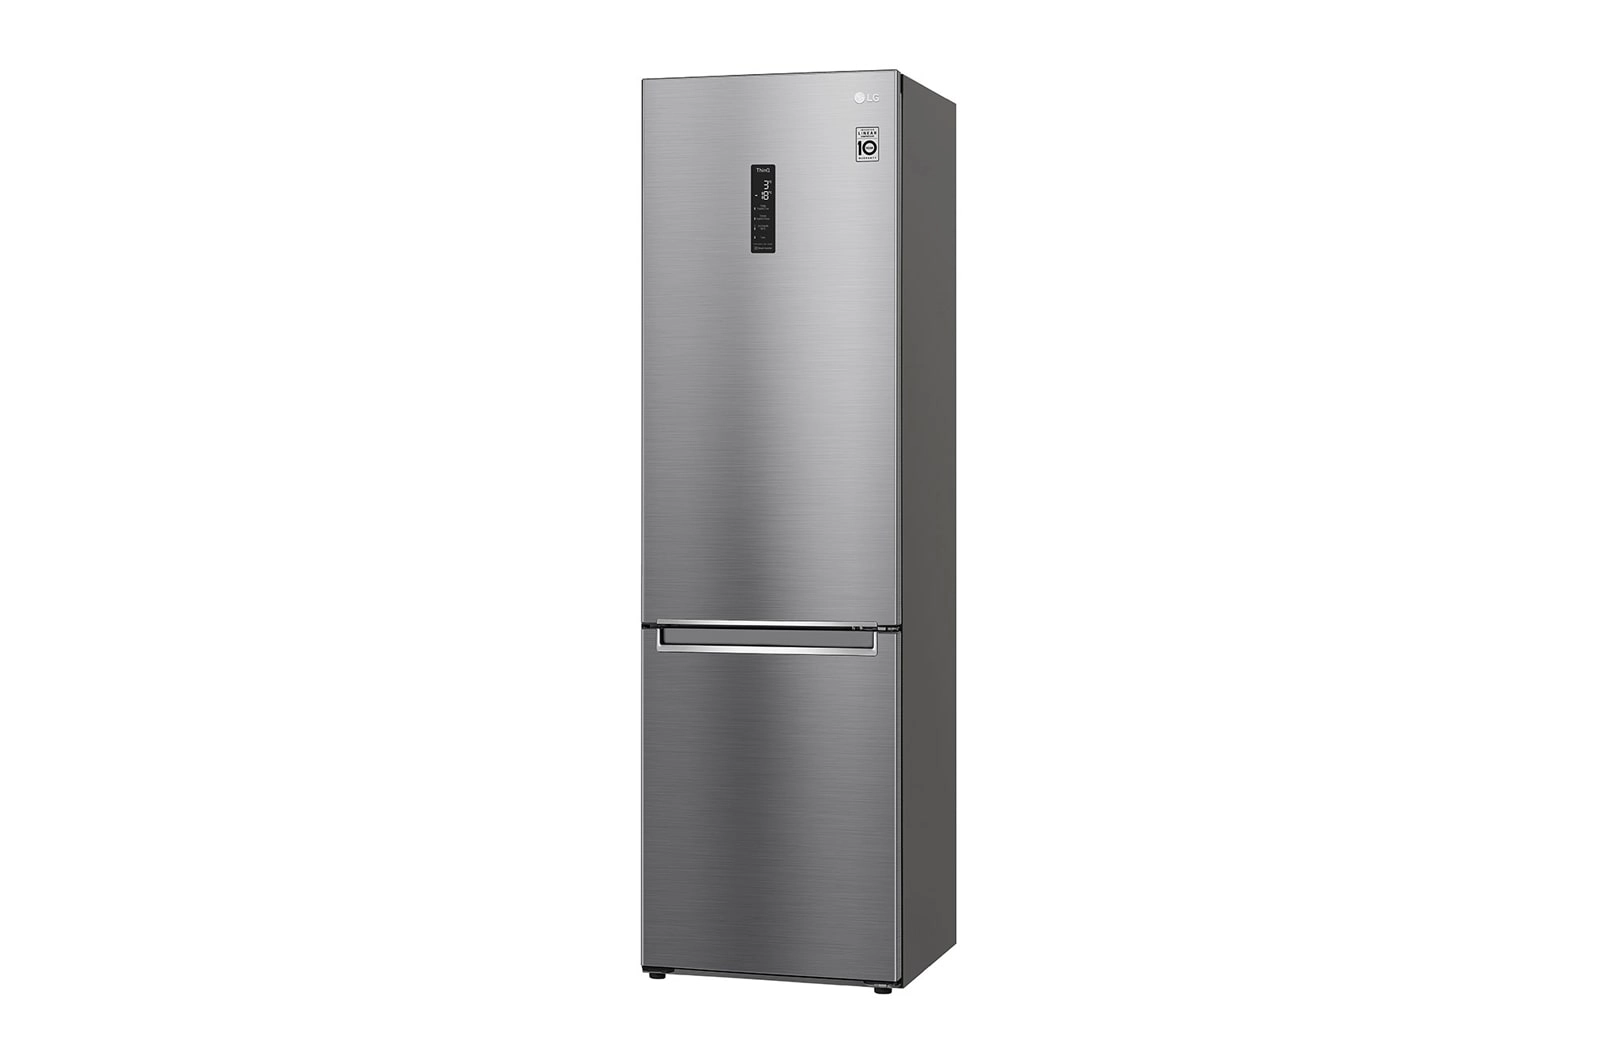 Двухкамерный холодильник lg no frost. Холодильник LG ga-b459clsl двухкамерный графит. Холодильник LG GC-b459slcl. Холодильник LG ga-b509cmqm. Холодильник LG GC-b509smum.